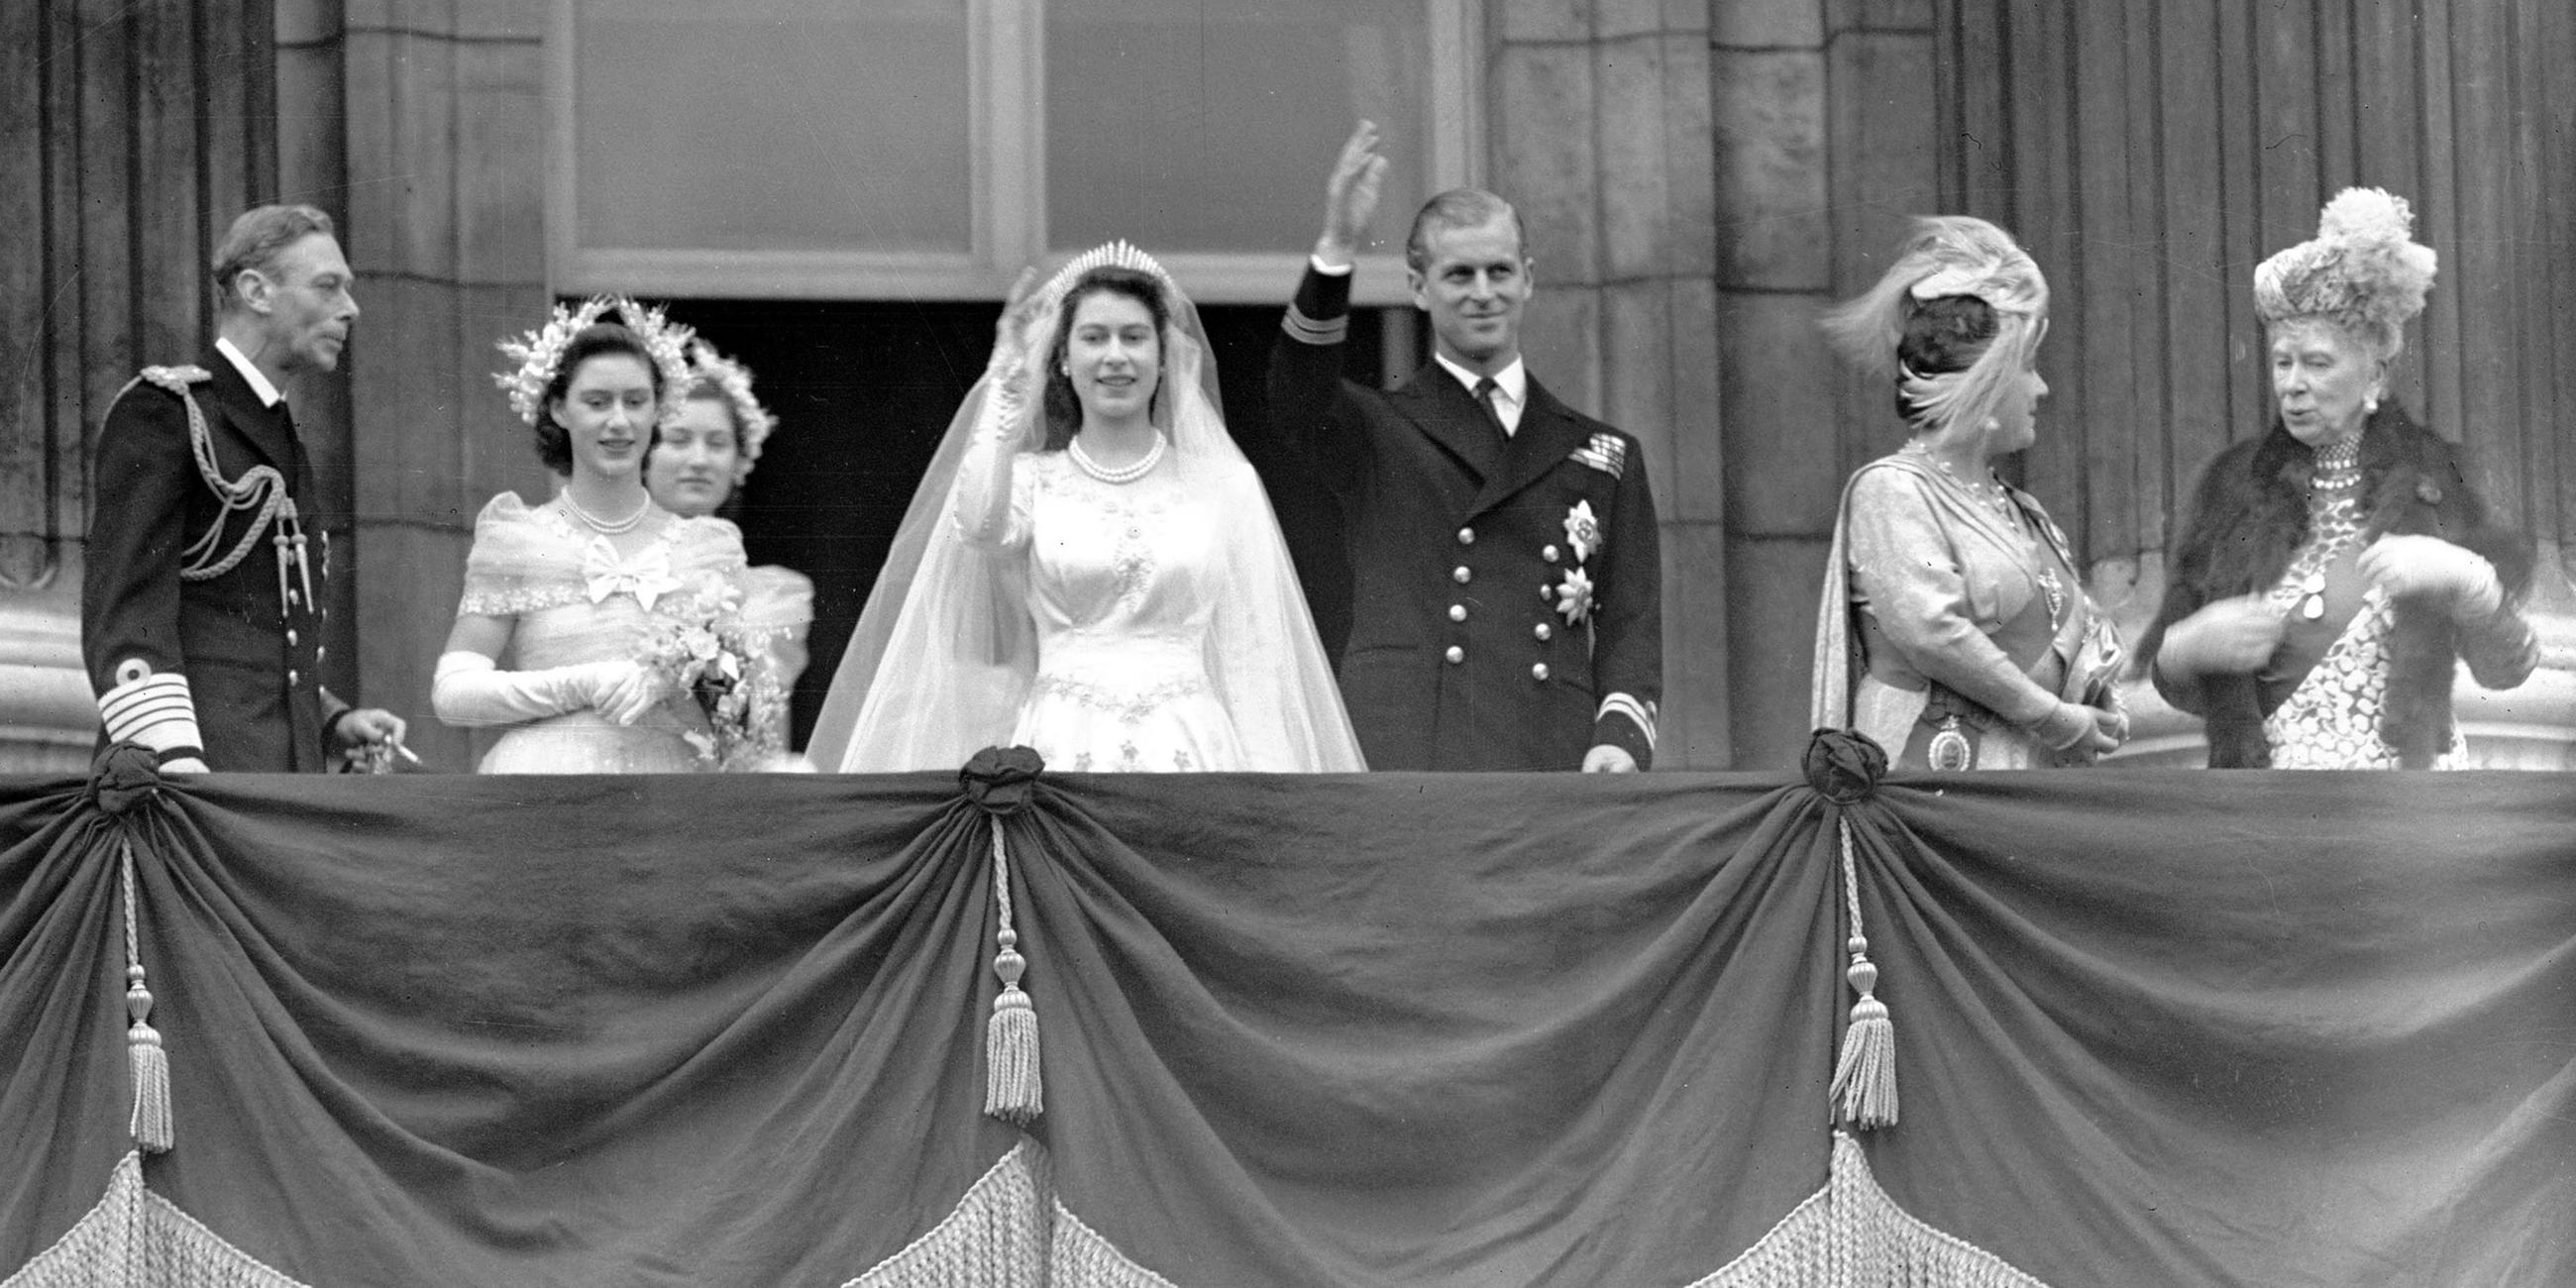 Am 20. November 1947 dann die Hochzeit - die große Liebe, wie die kommenden Jahrzehnte zeigen.